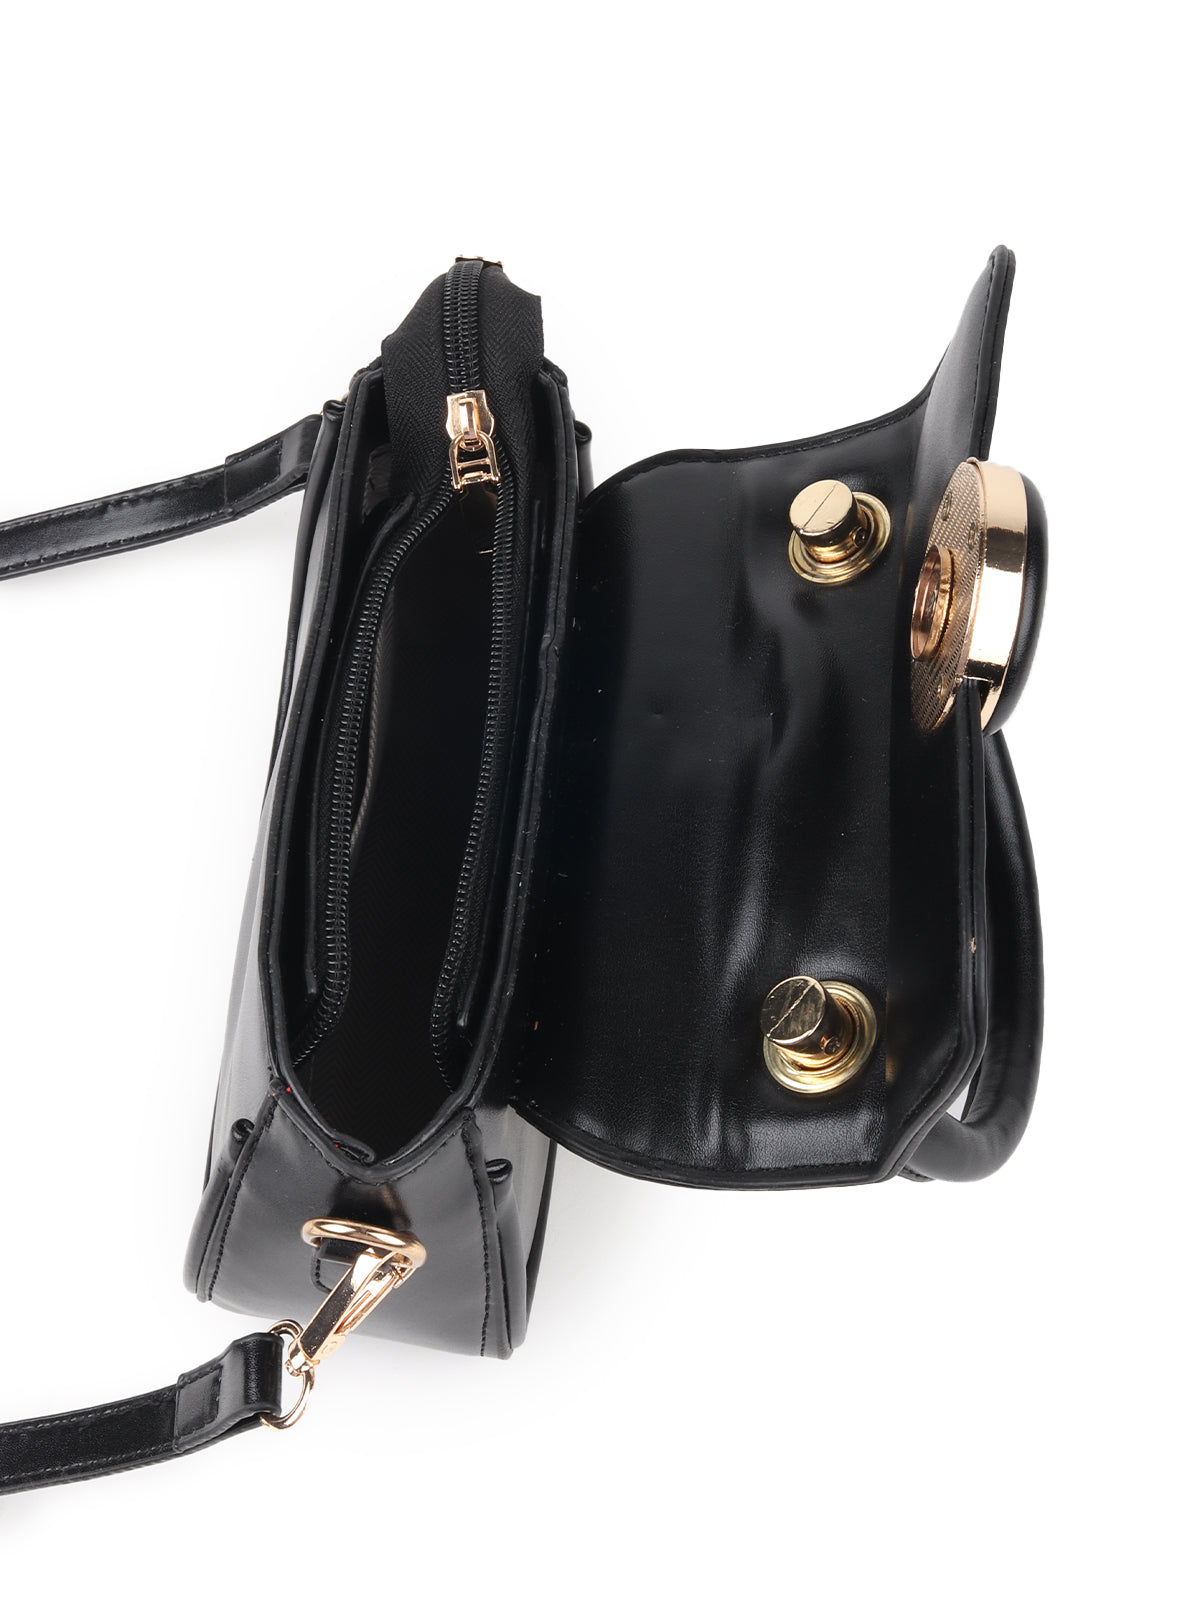 Odette Black Solid Polyurethane Clutch Bag For Women